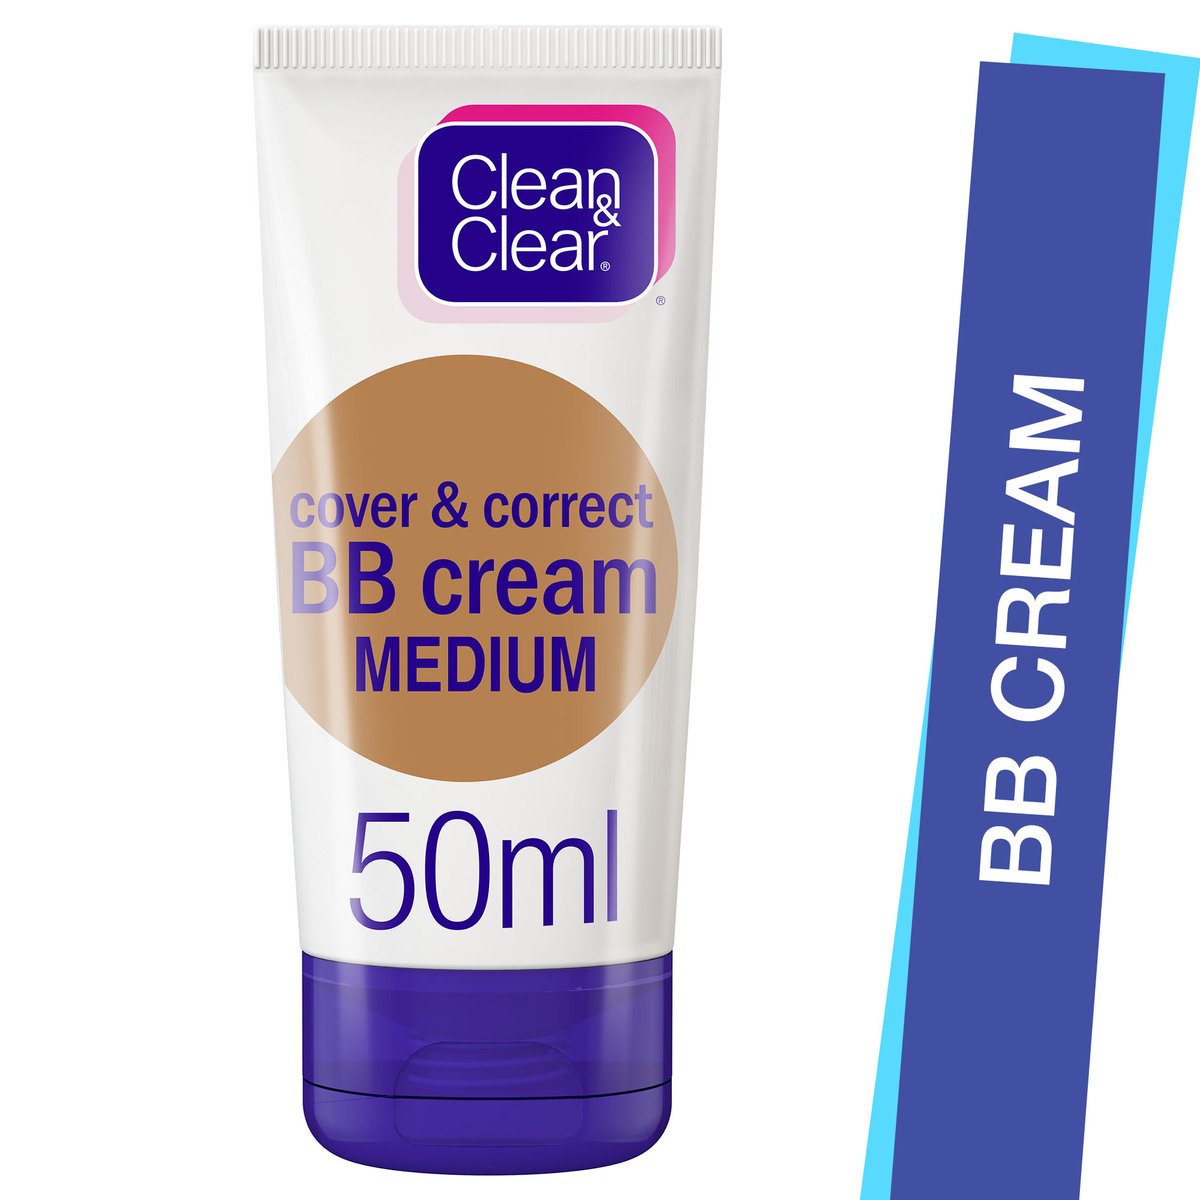 Clean & Clear BB Cream Cover & Correct Medium 50 ml